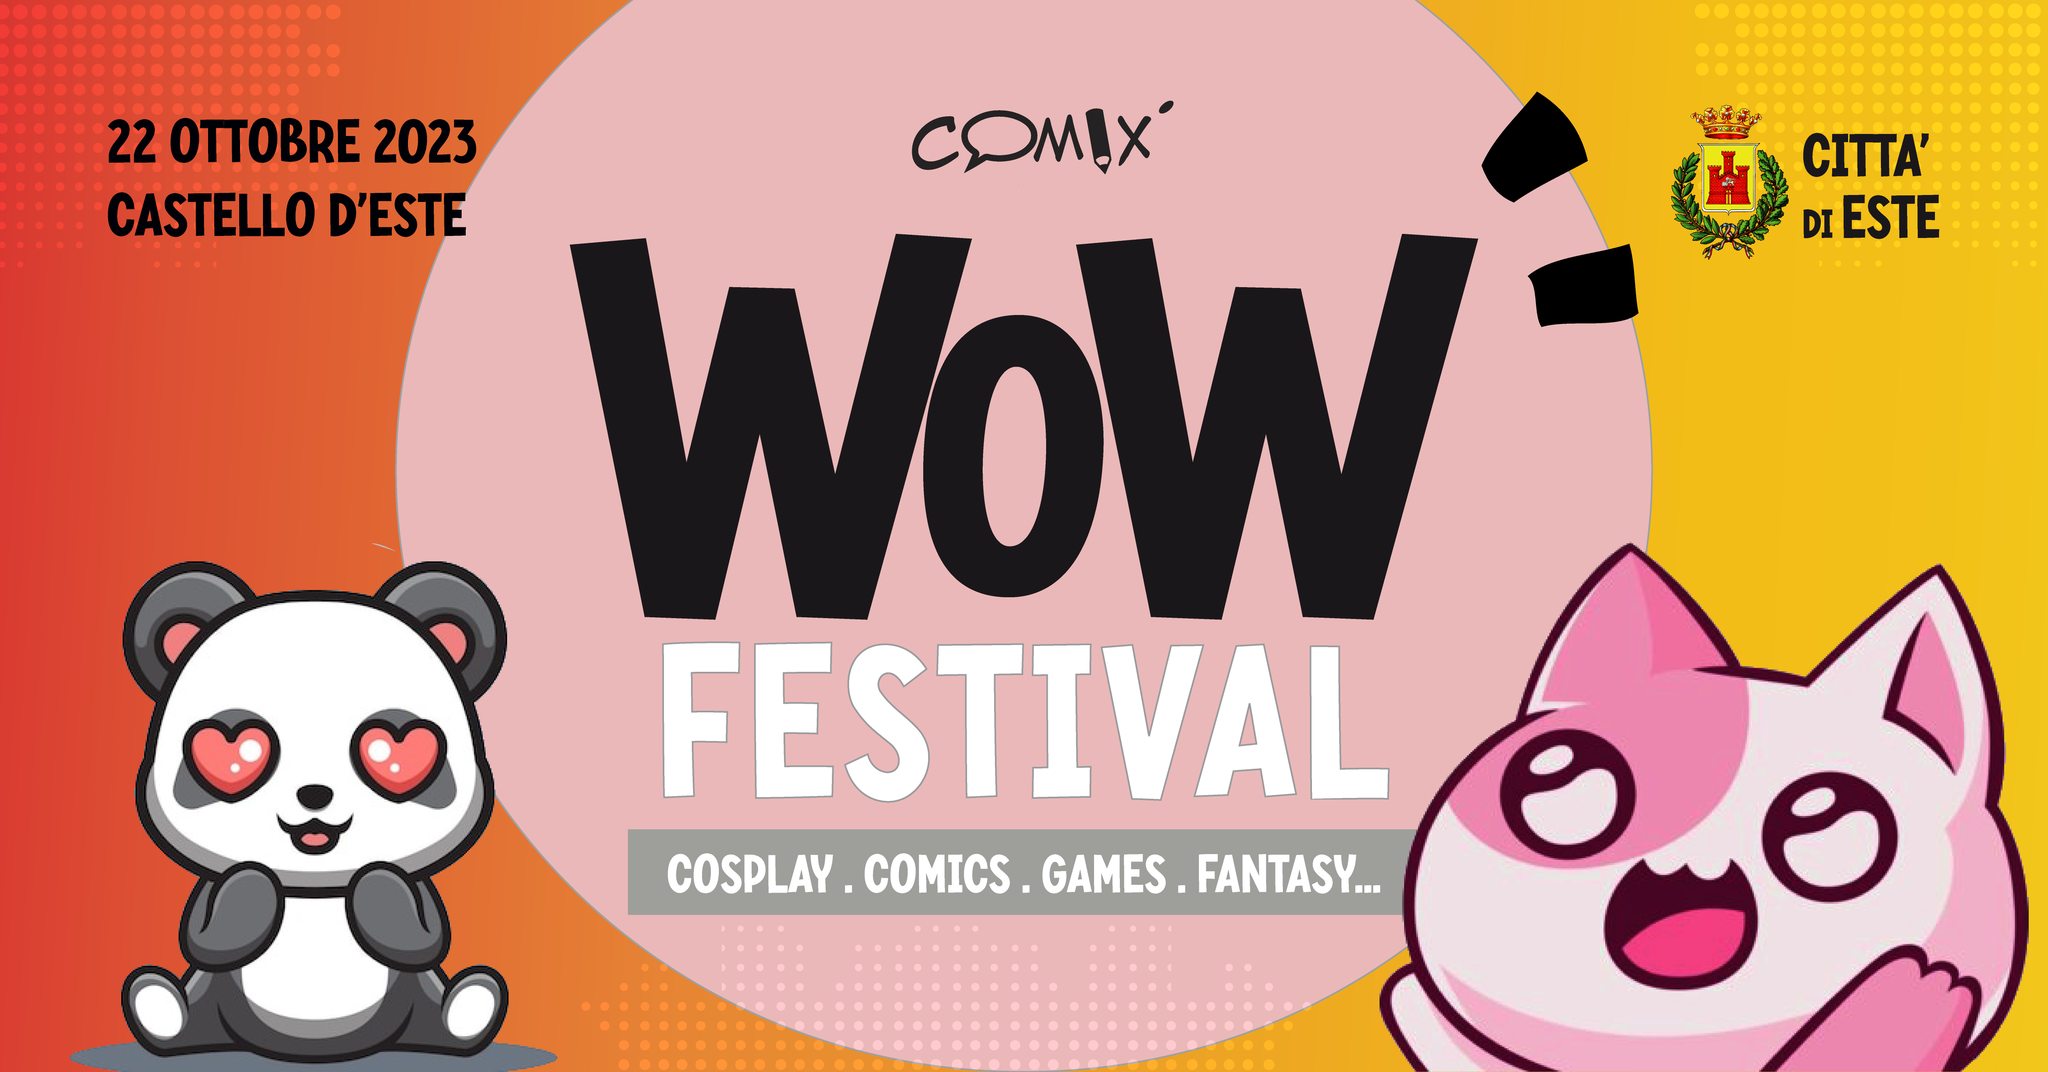 Il 22 ottobre 2023 tutti pronti per il WoW Festival al Castello di Padova